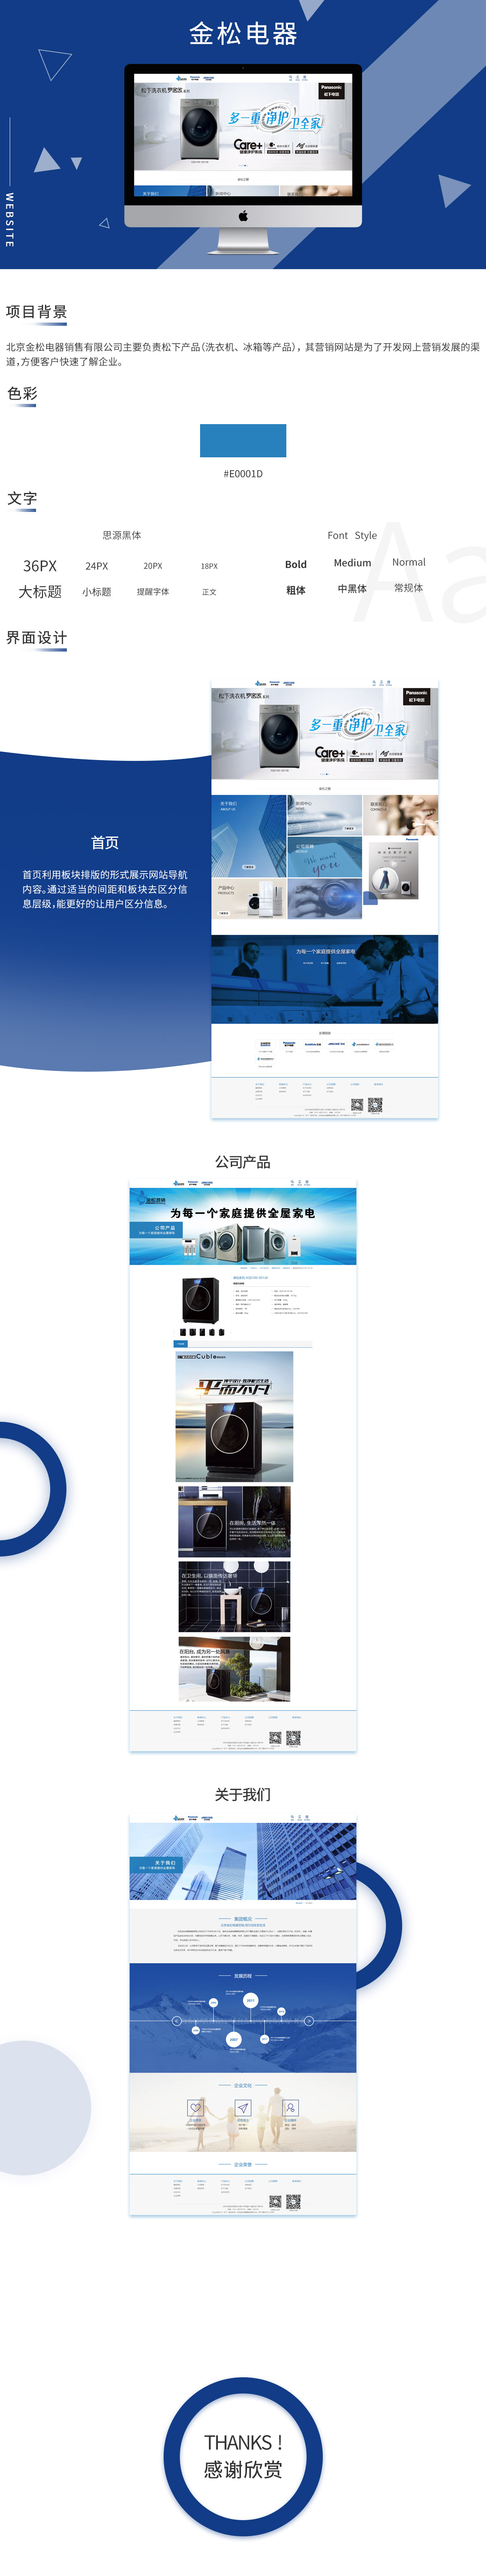 北京金松电器销售有限企业营销网站案例